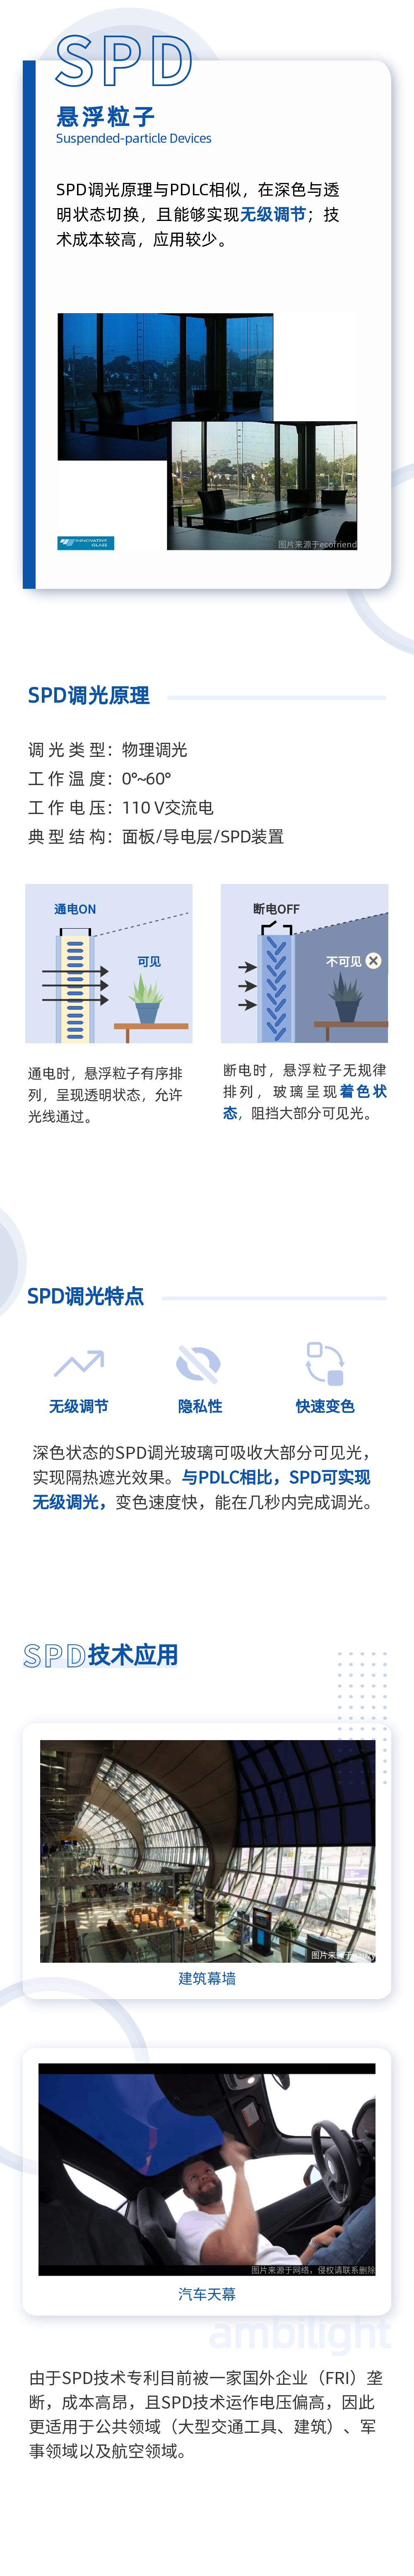 04不同技术路线_SPD_长图文.png